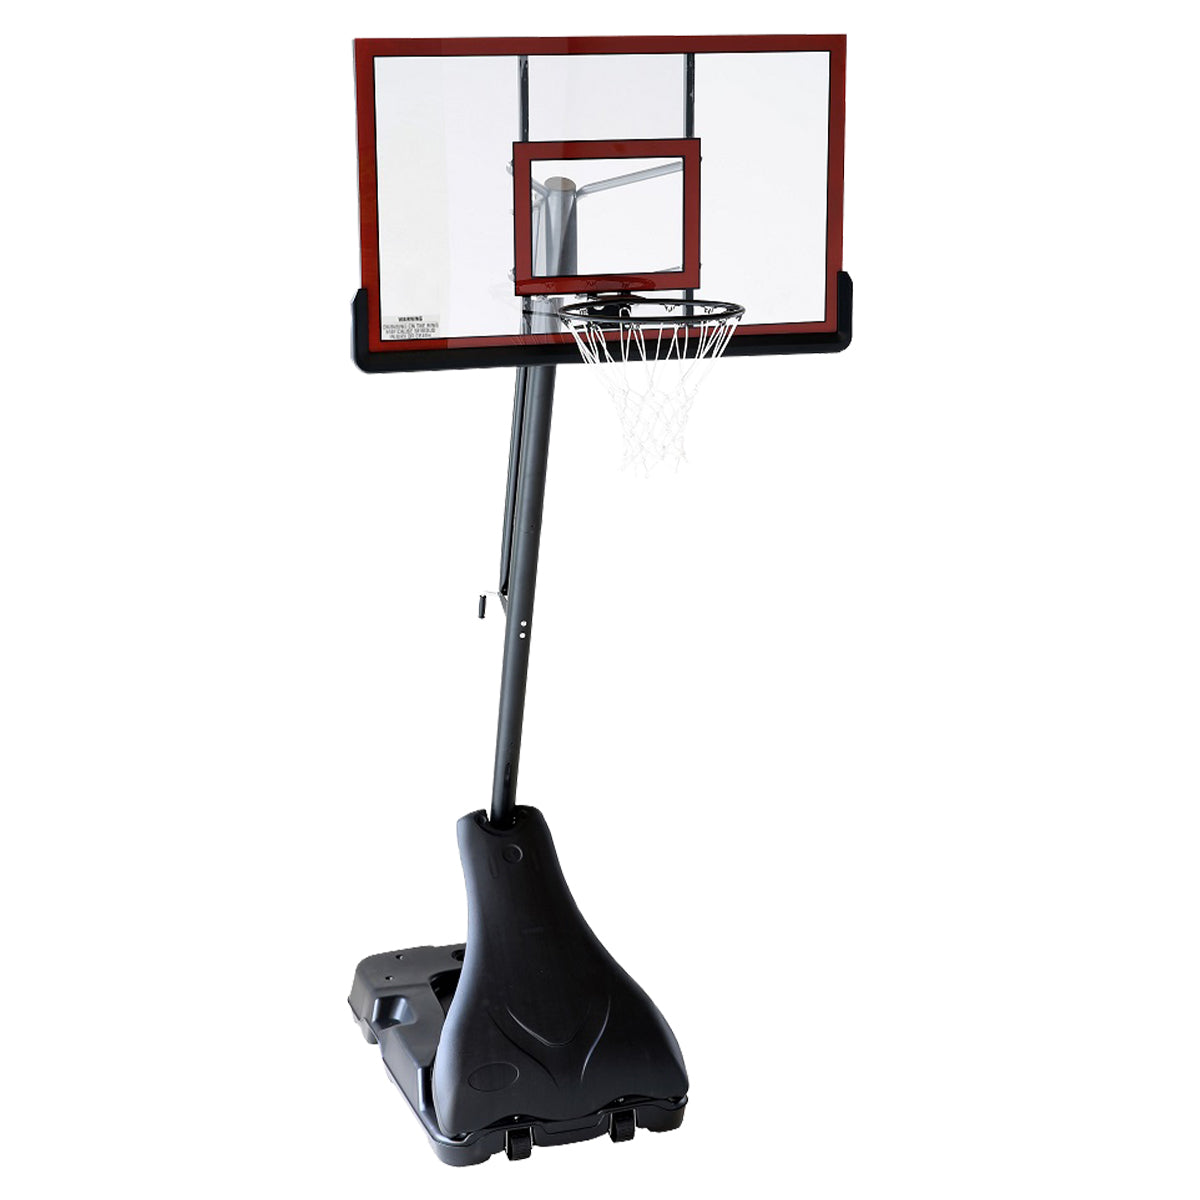 Kahuna Portable Basketball Ring Stand w/ Adjustable Height Ball Holder - SILBERSHELL